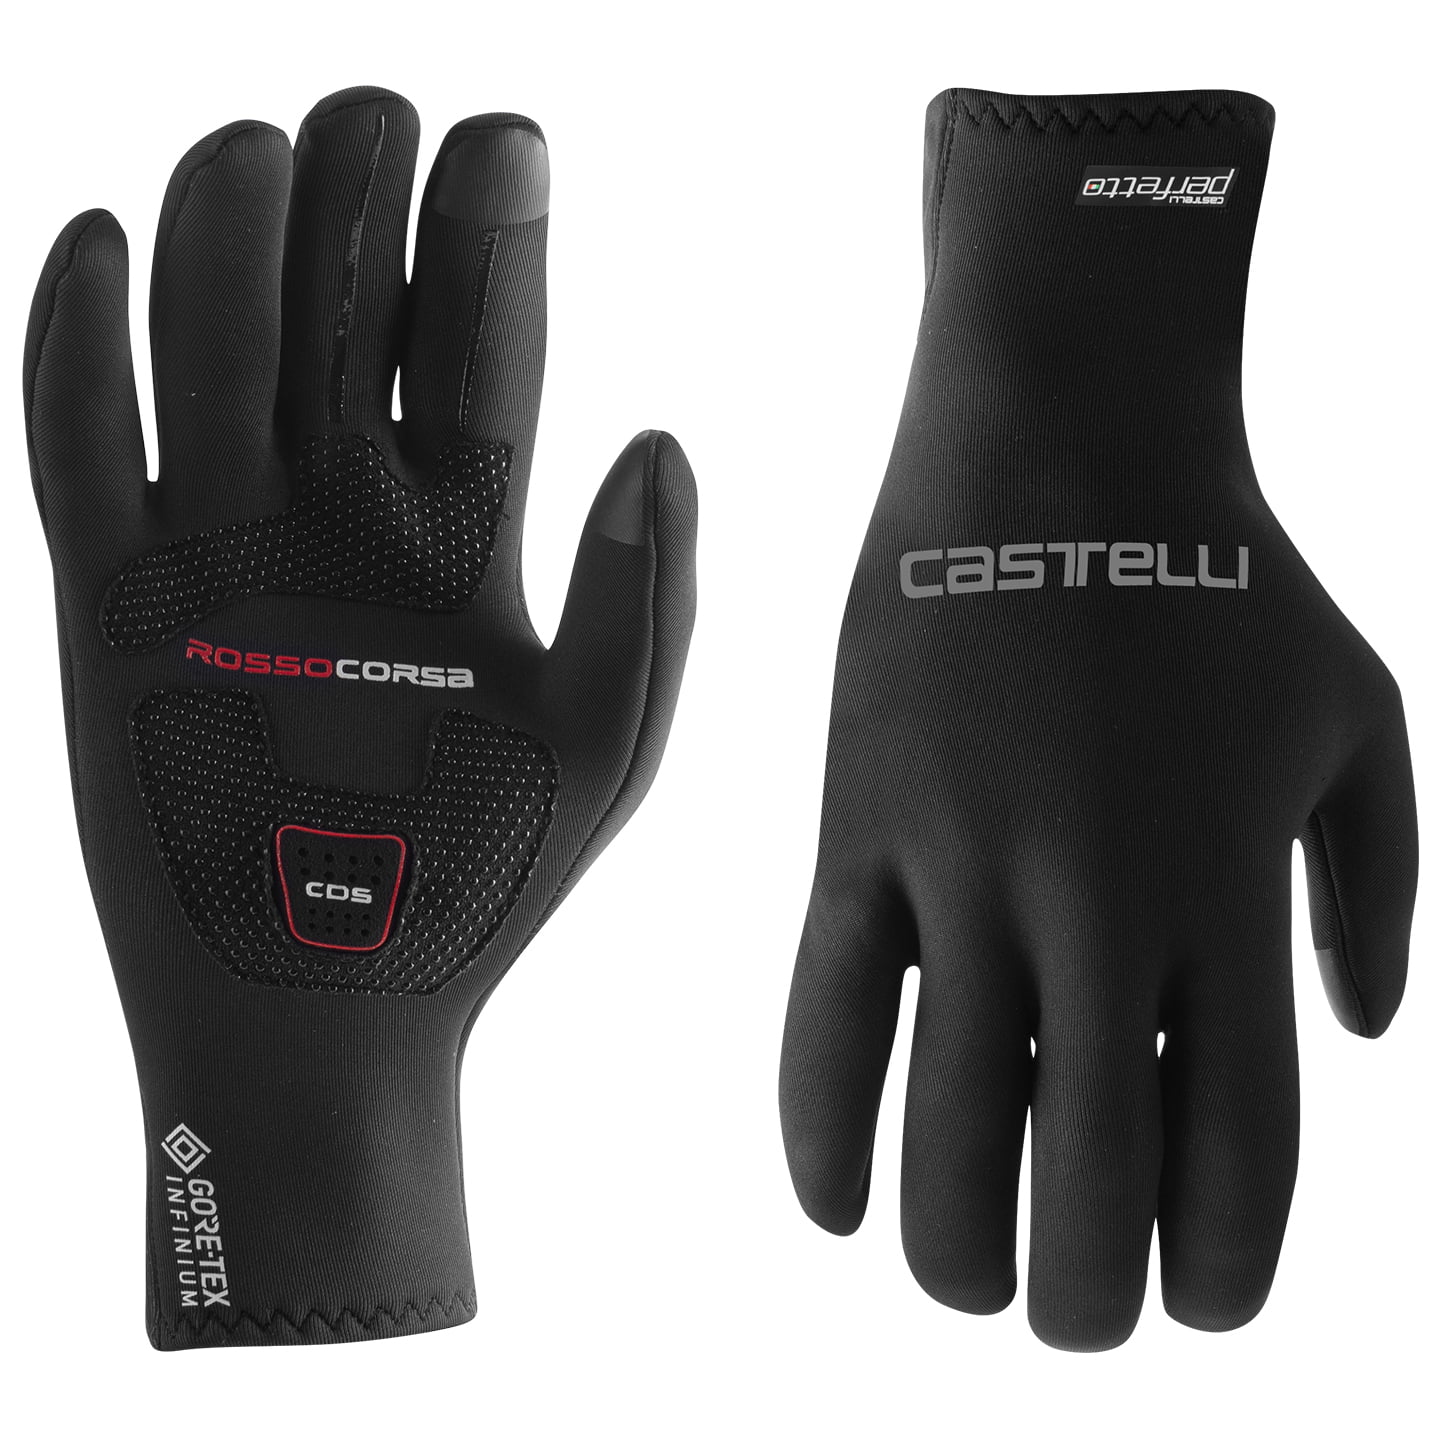 CASTELLI Perfetto Max Winter Gloves Winter Cycling Gloves, for men, size M, Cycling gloves, Cycling gear